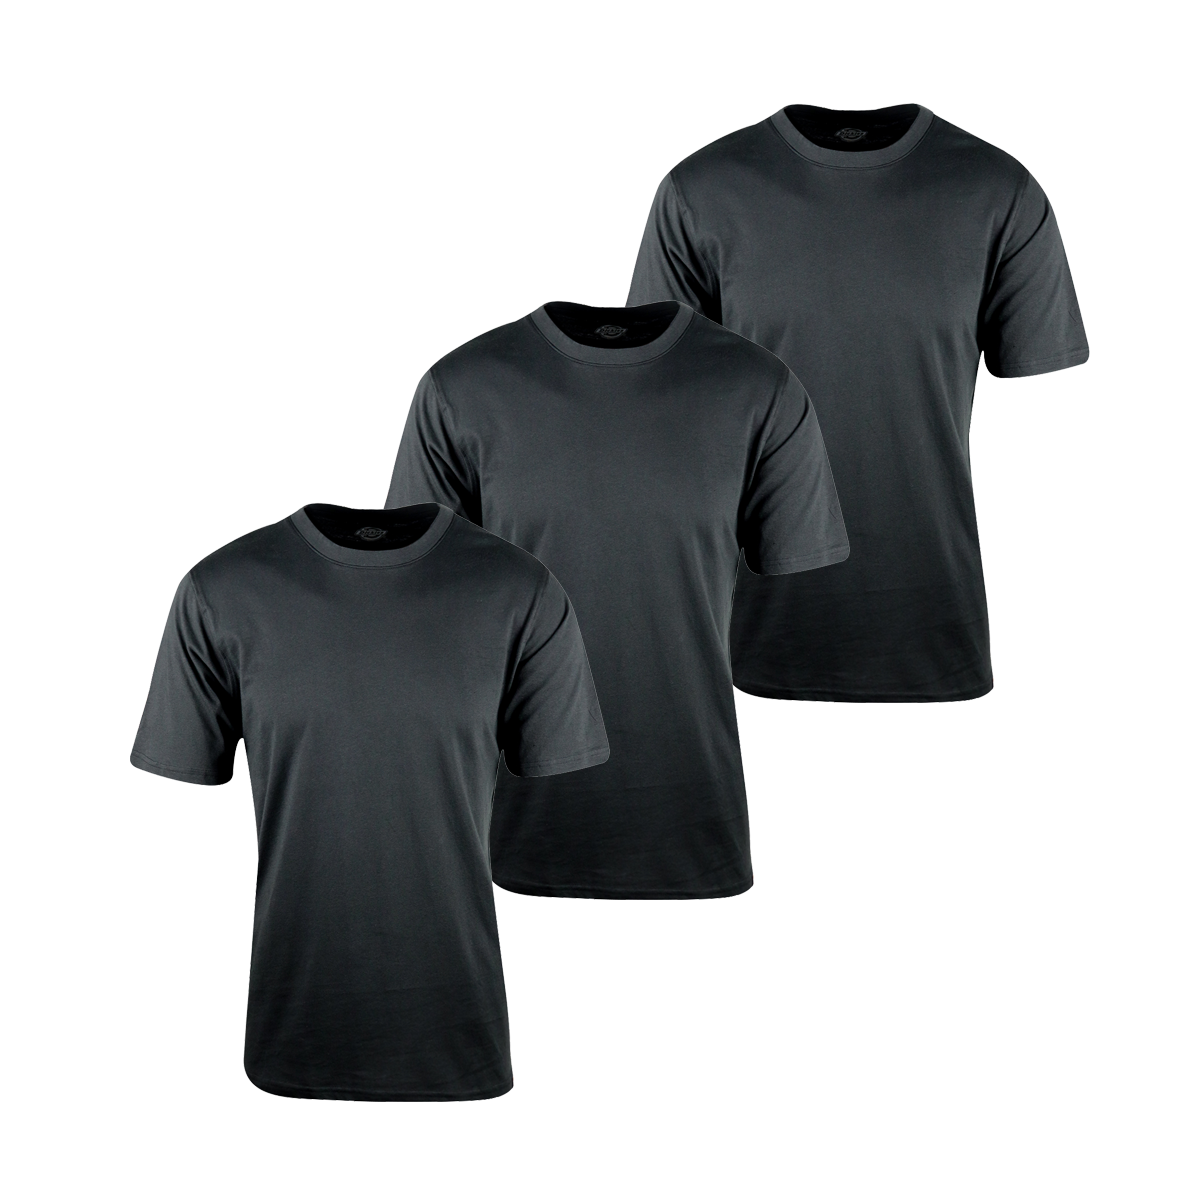 Dickies Men's Black 3 Pack S/S T-Shirt (S02)